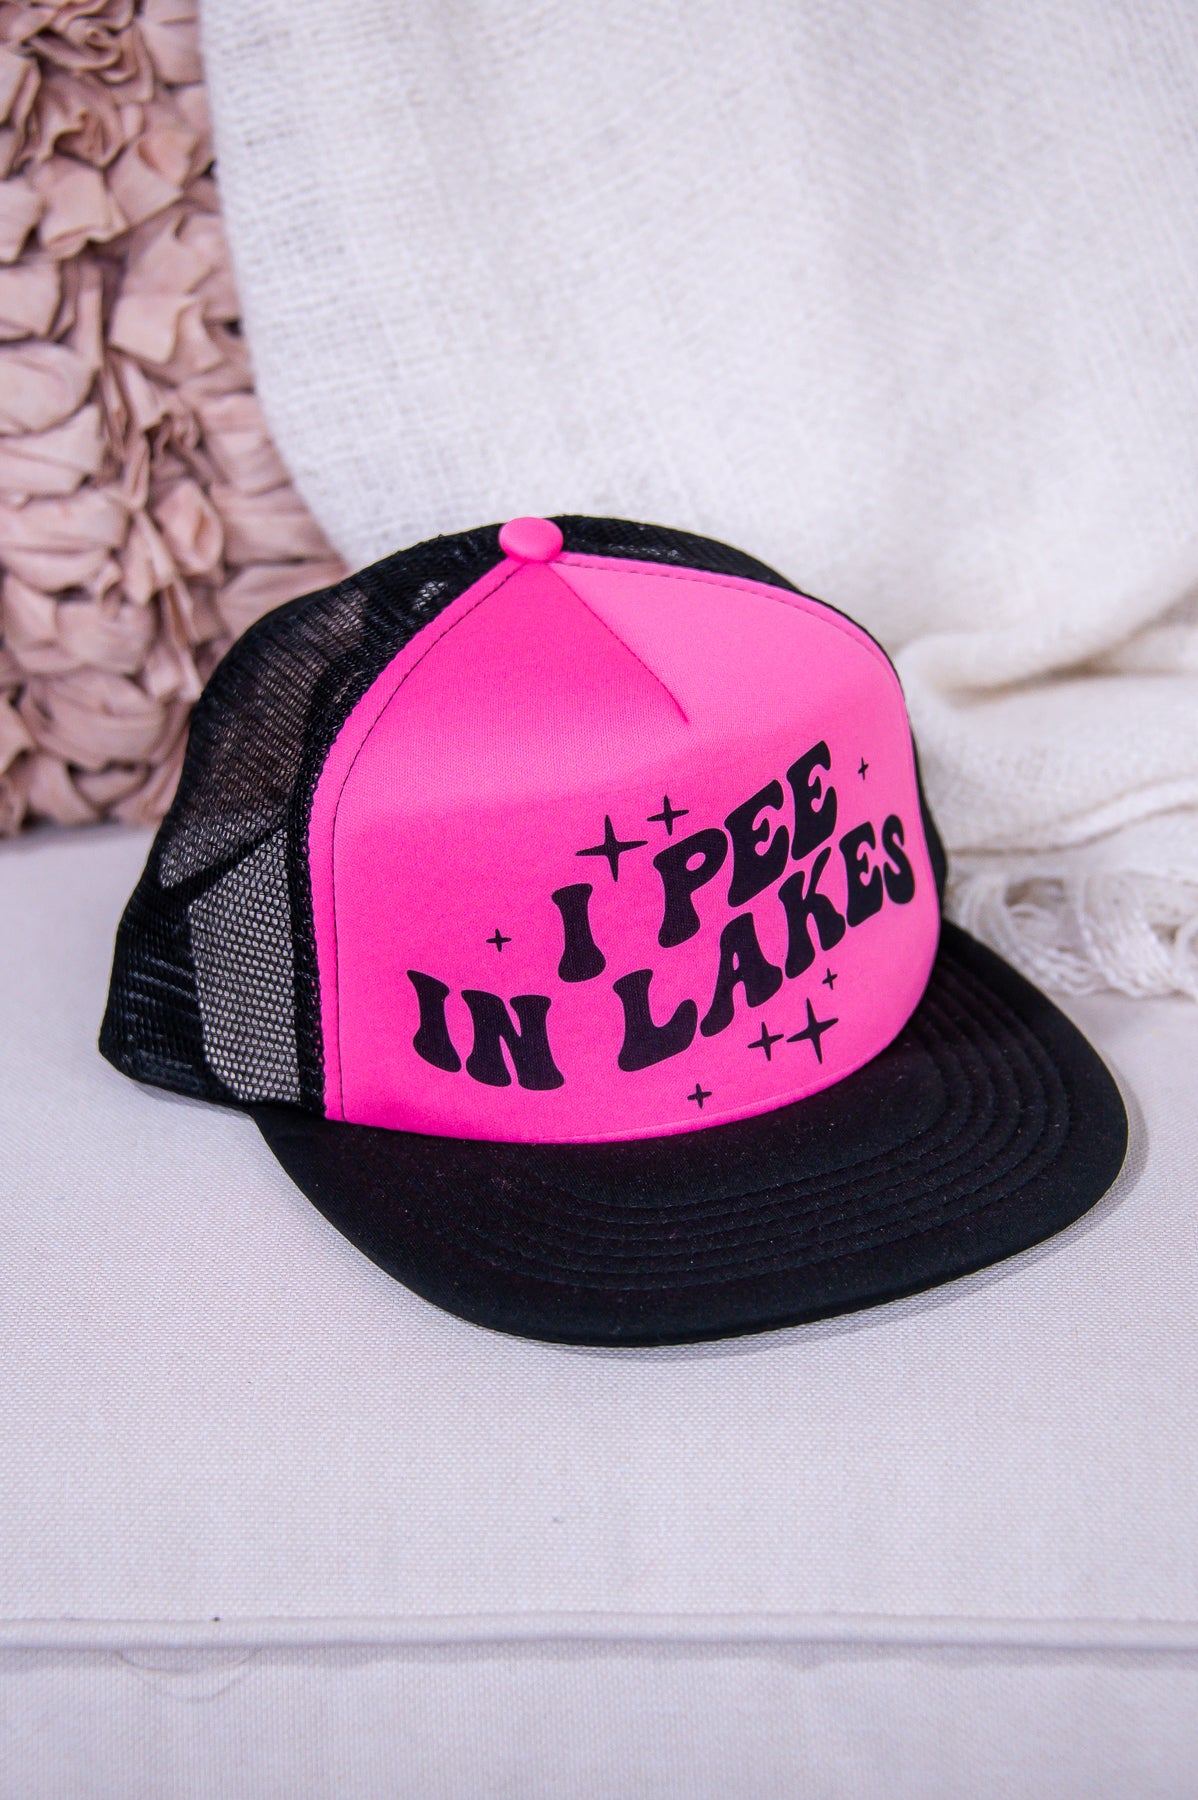 I Pee In Lakes Hot Pink/Black Foam Trucker Hat - HAT1496HPK